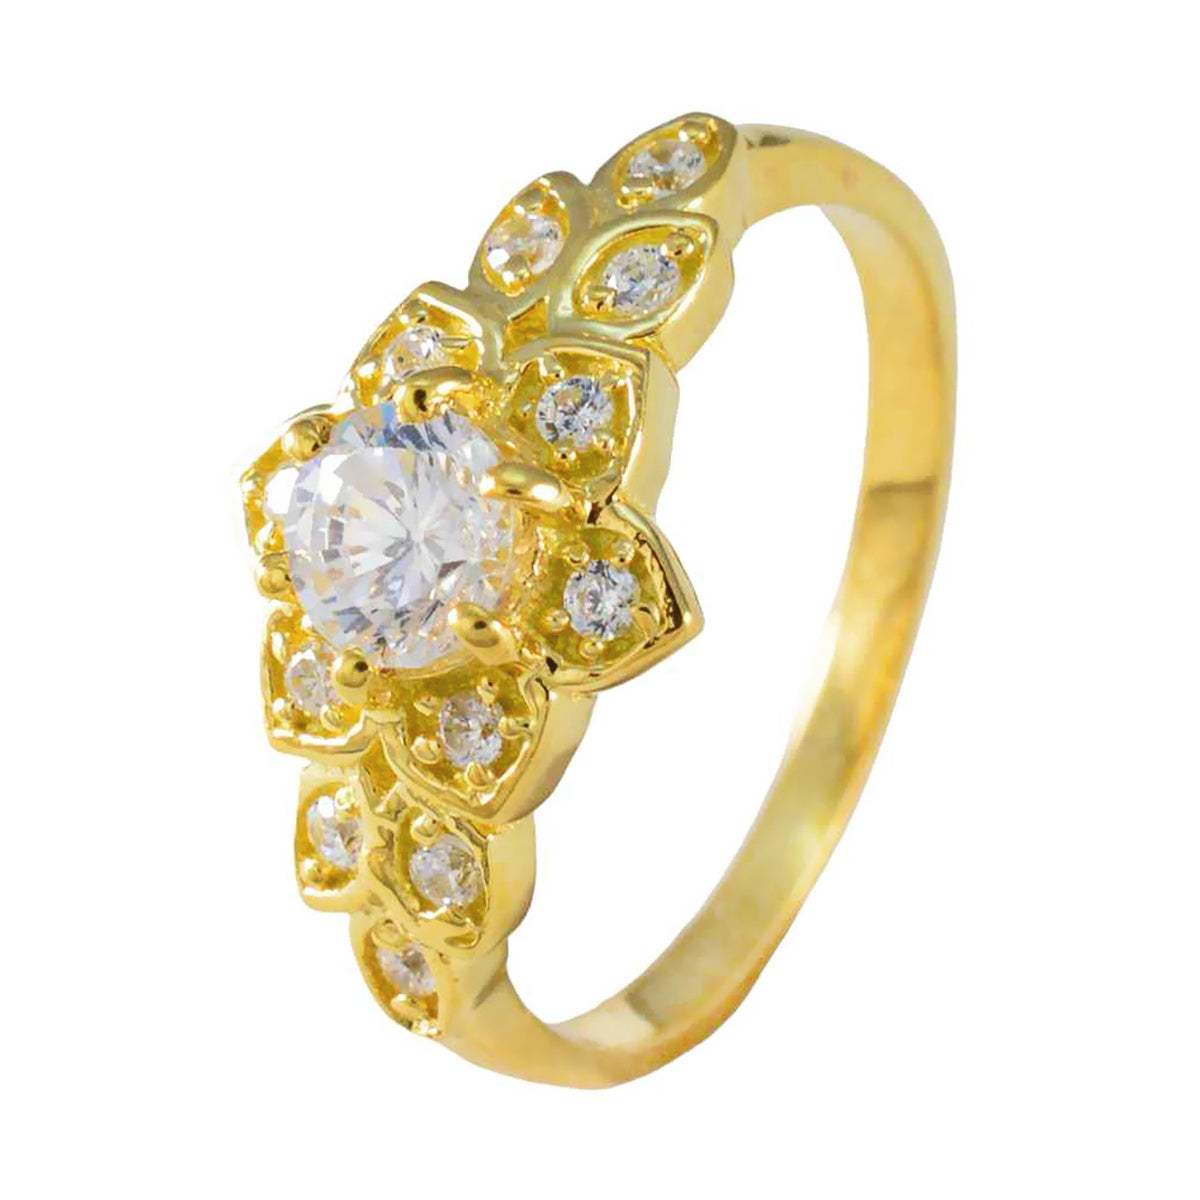 riyo desiderabile anello in argento con placcatura in oro giallo pietra bianca cz a forma rotonda con montatura a punta elegante anello per capodanno